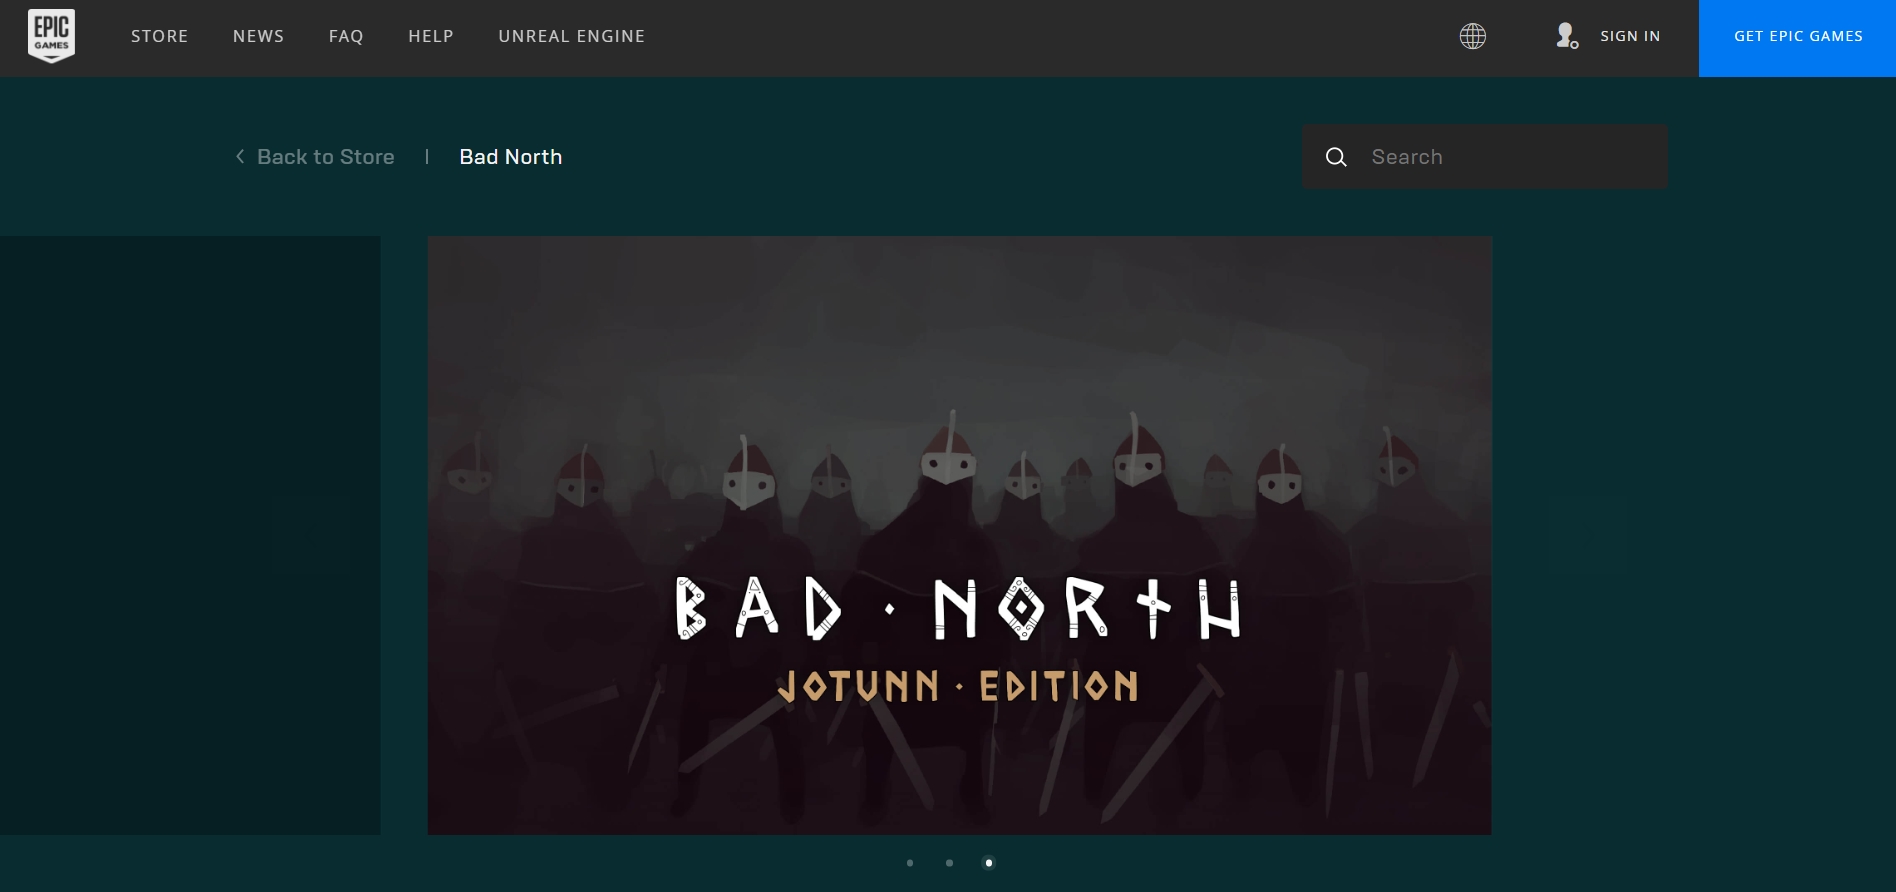 Consigue Bad North: Jotunn Edition gratis en la tienda de Epic Games por tiempo limitado